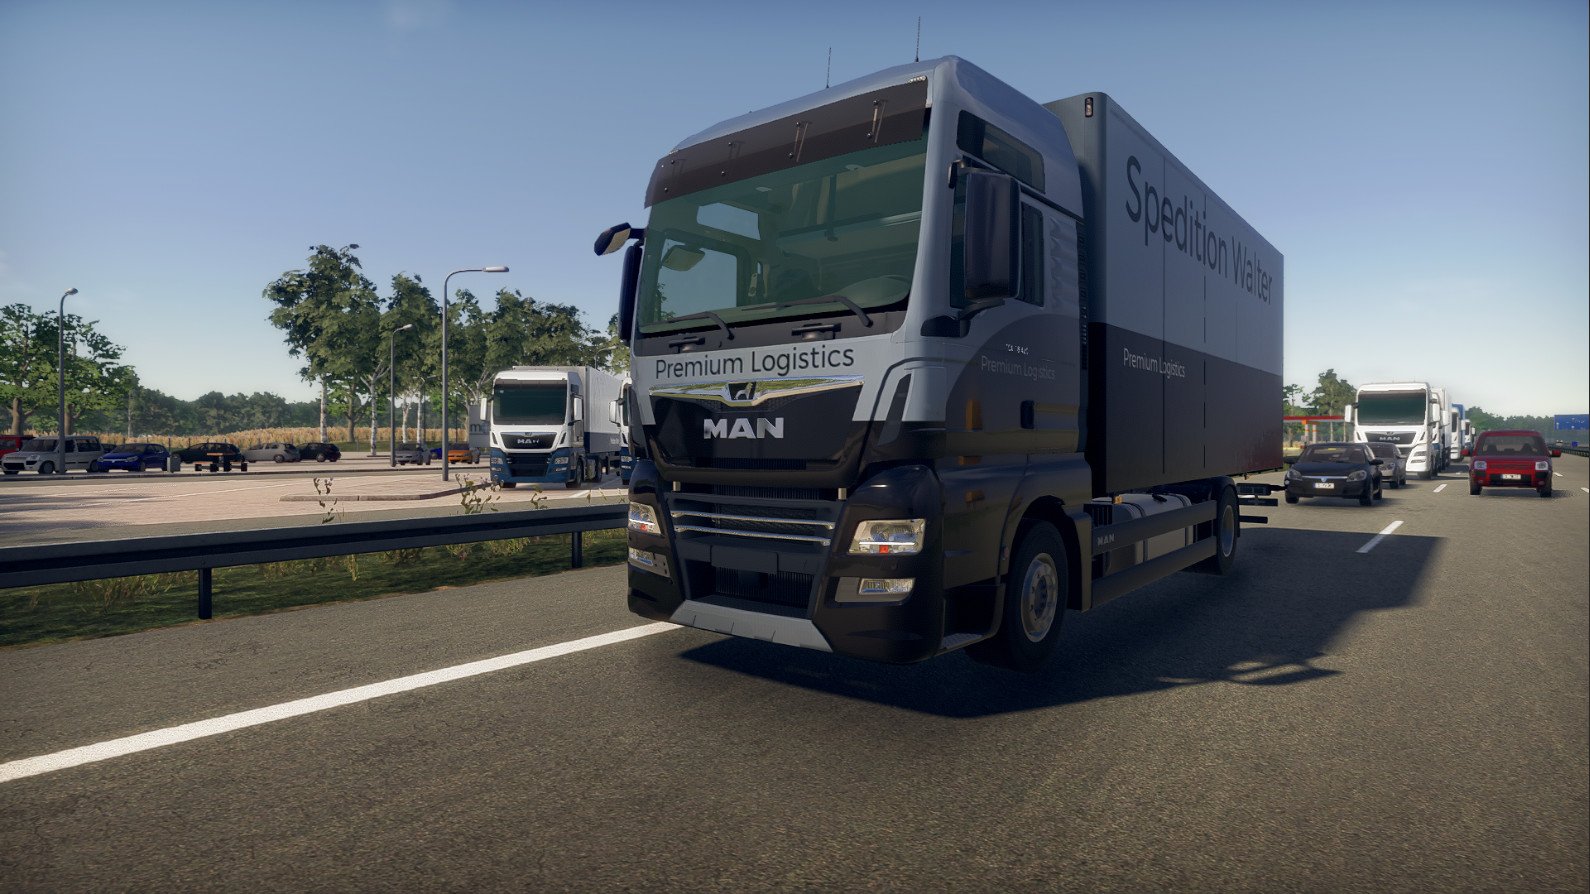 Simulador de caminhão para PS4 e Xbox One